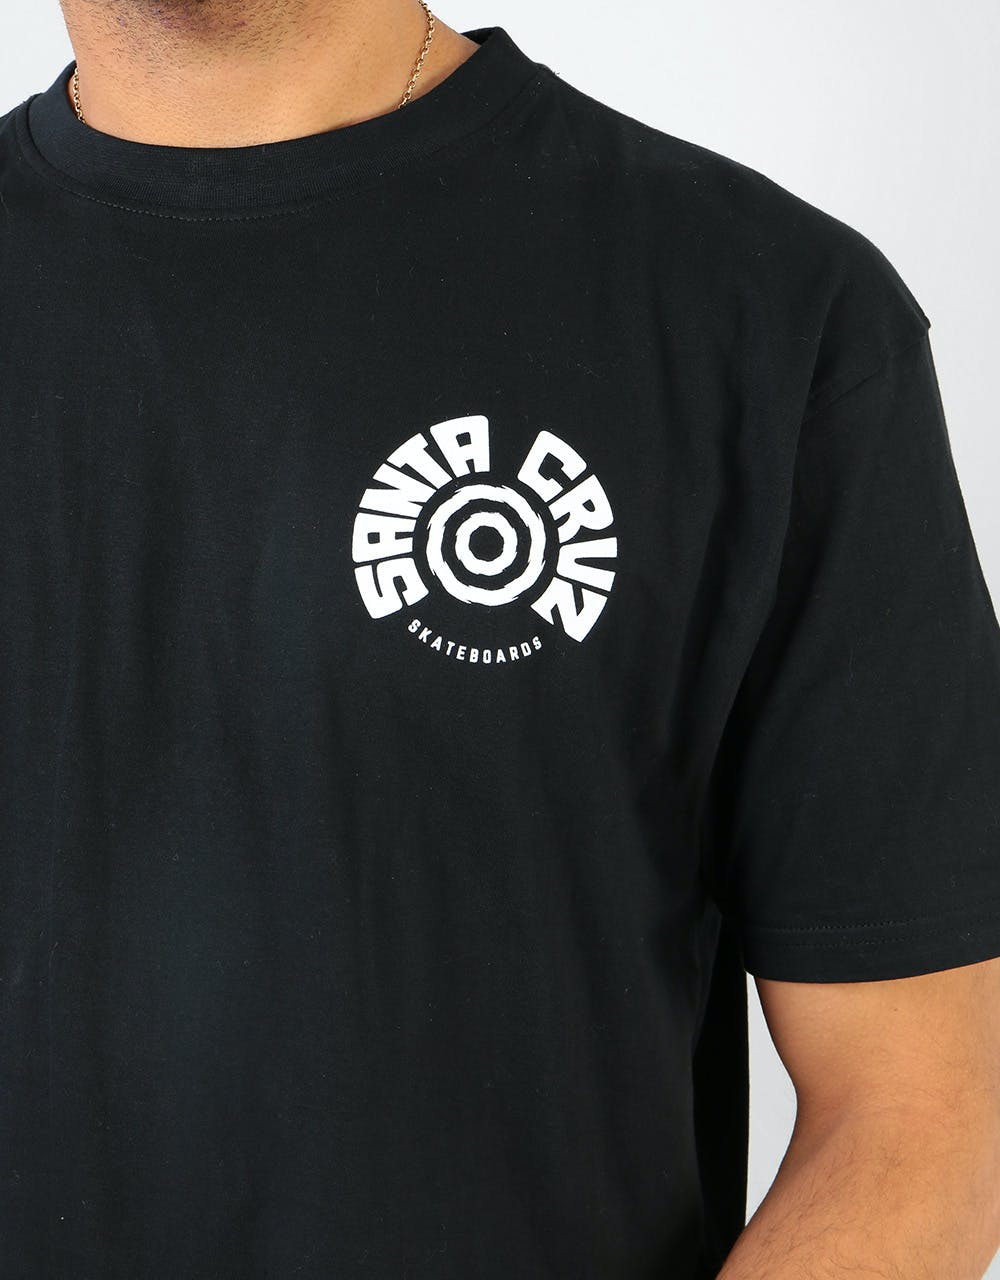 Santa Cruz Tortile T-Shirt - Black